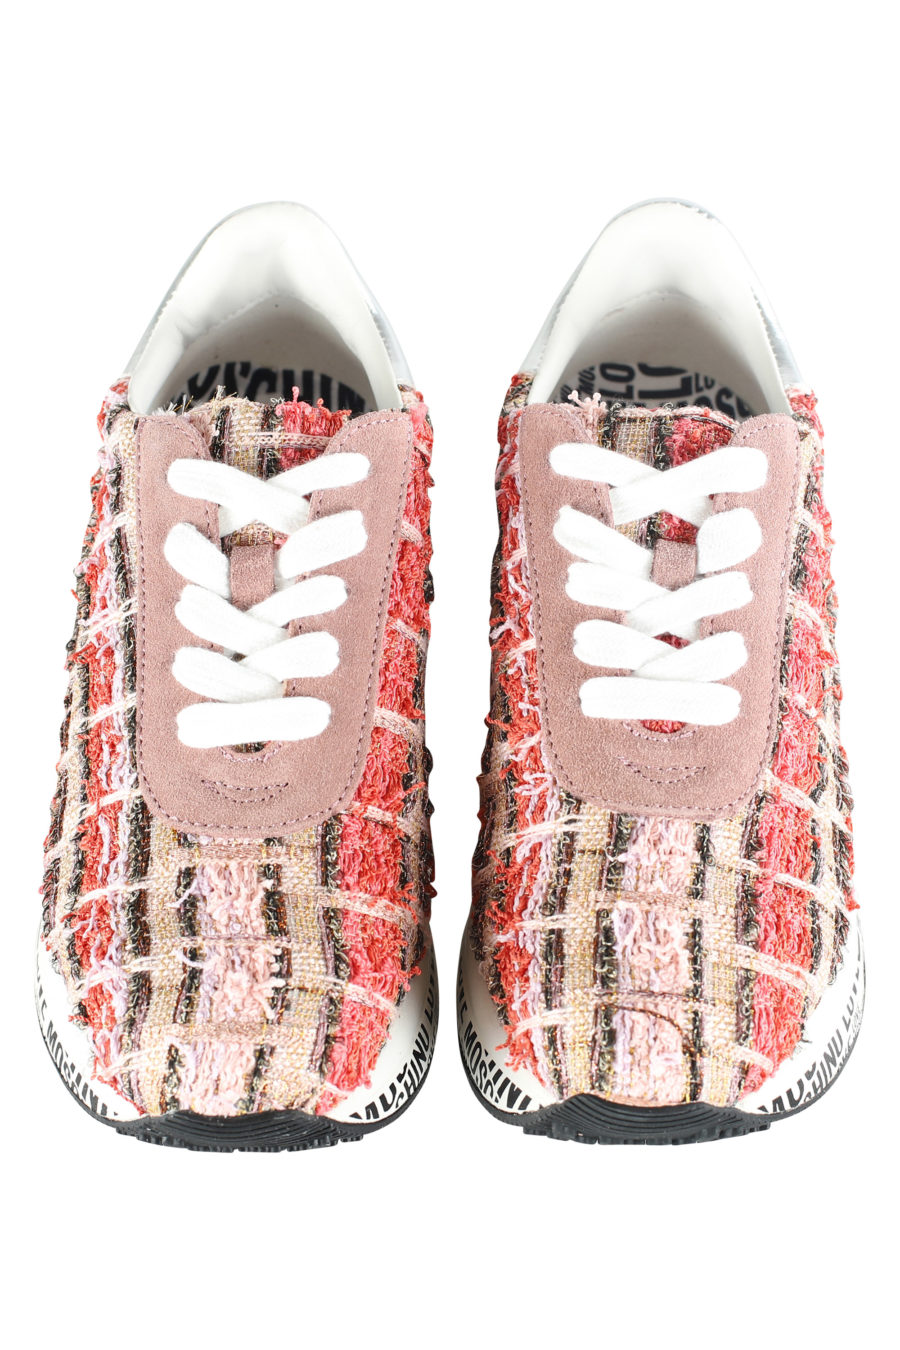 Zapatillas multi color en tejido "tweet" - IMG 5353